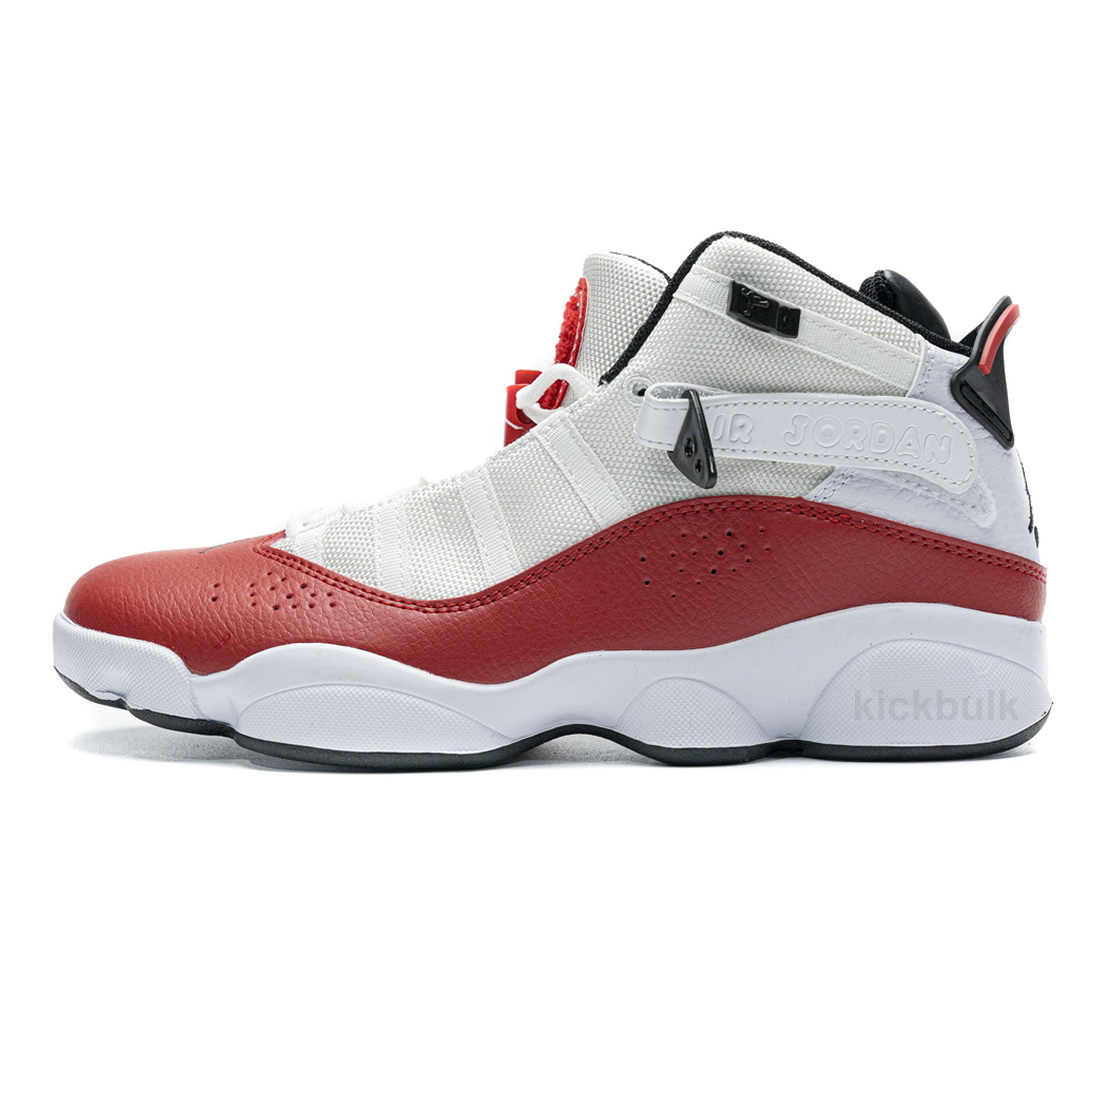 Nike Jordan 6 Rings Bg Basketball Shoes White Red Lifestyle 323419 120 1 - www.kickbulk.org